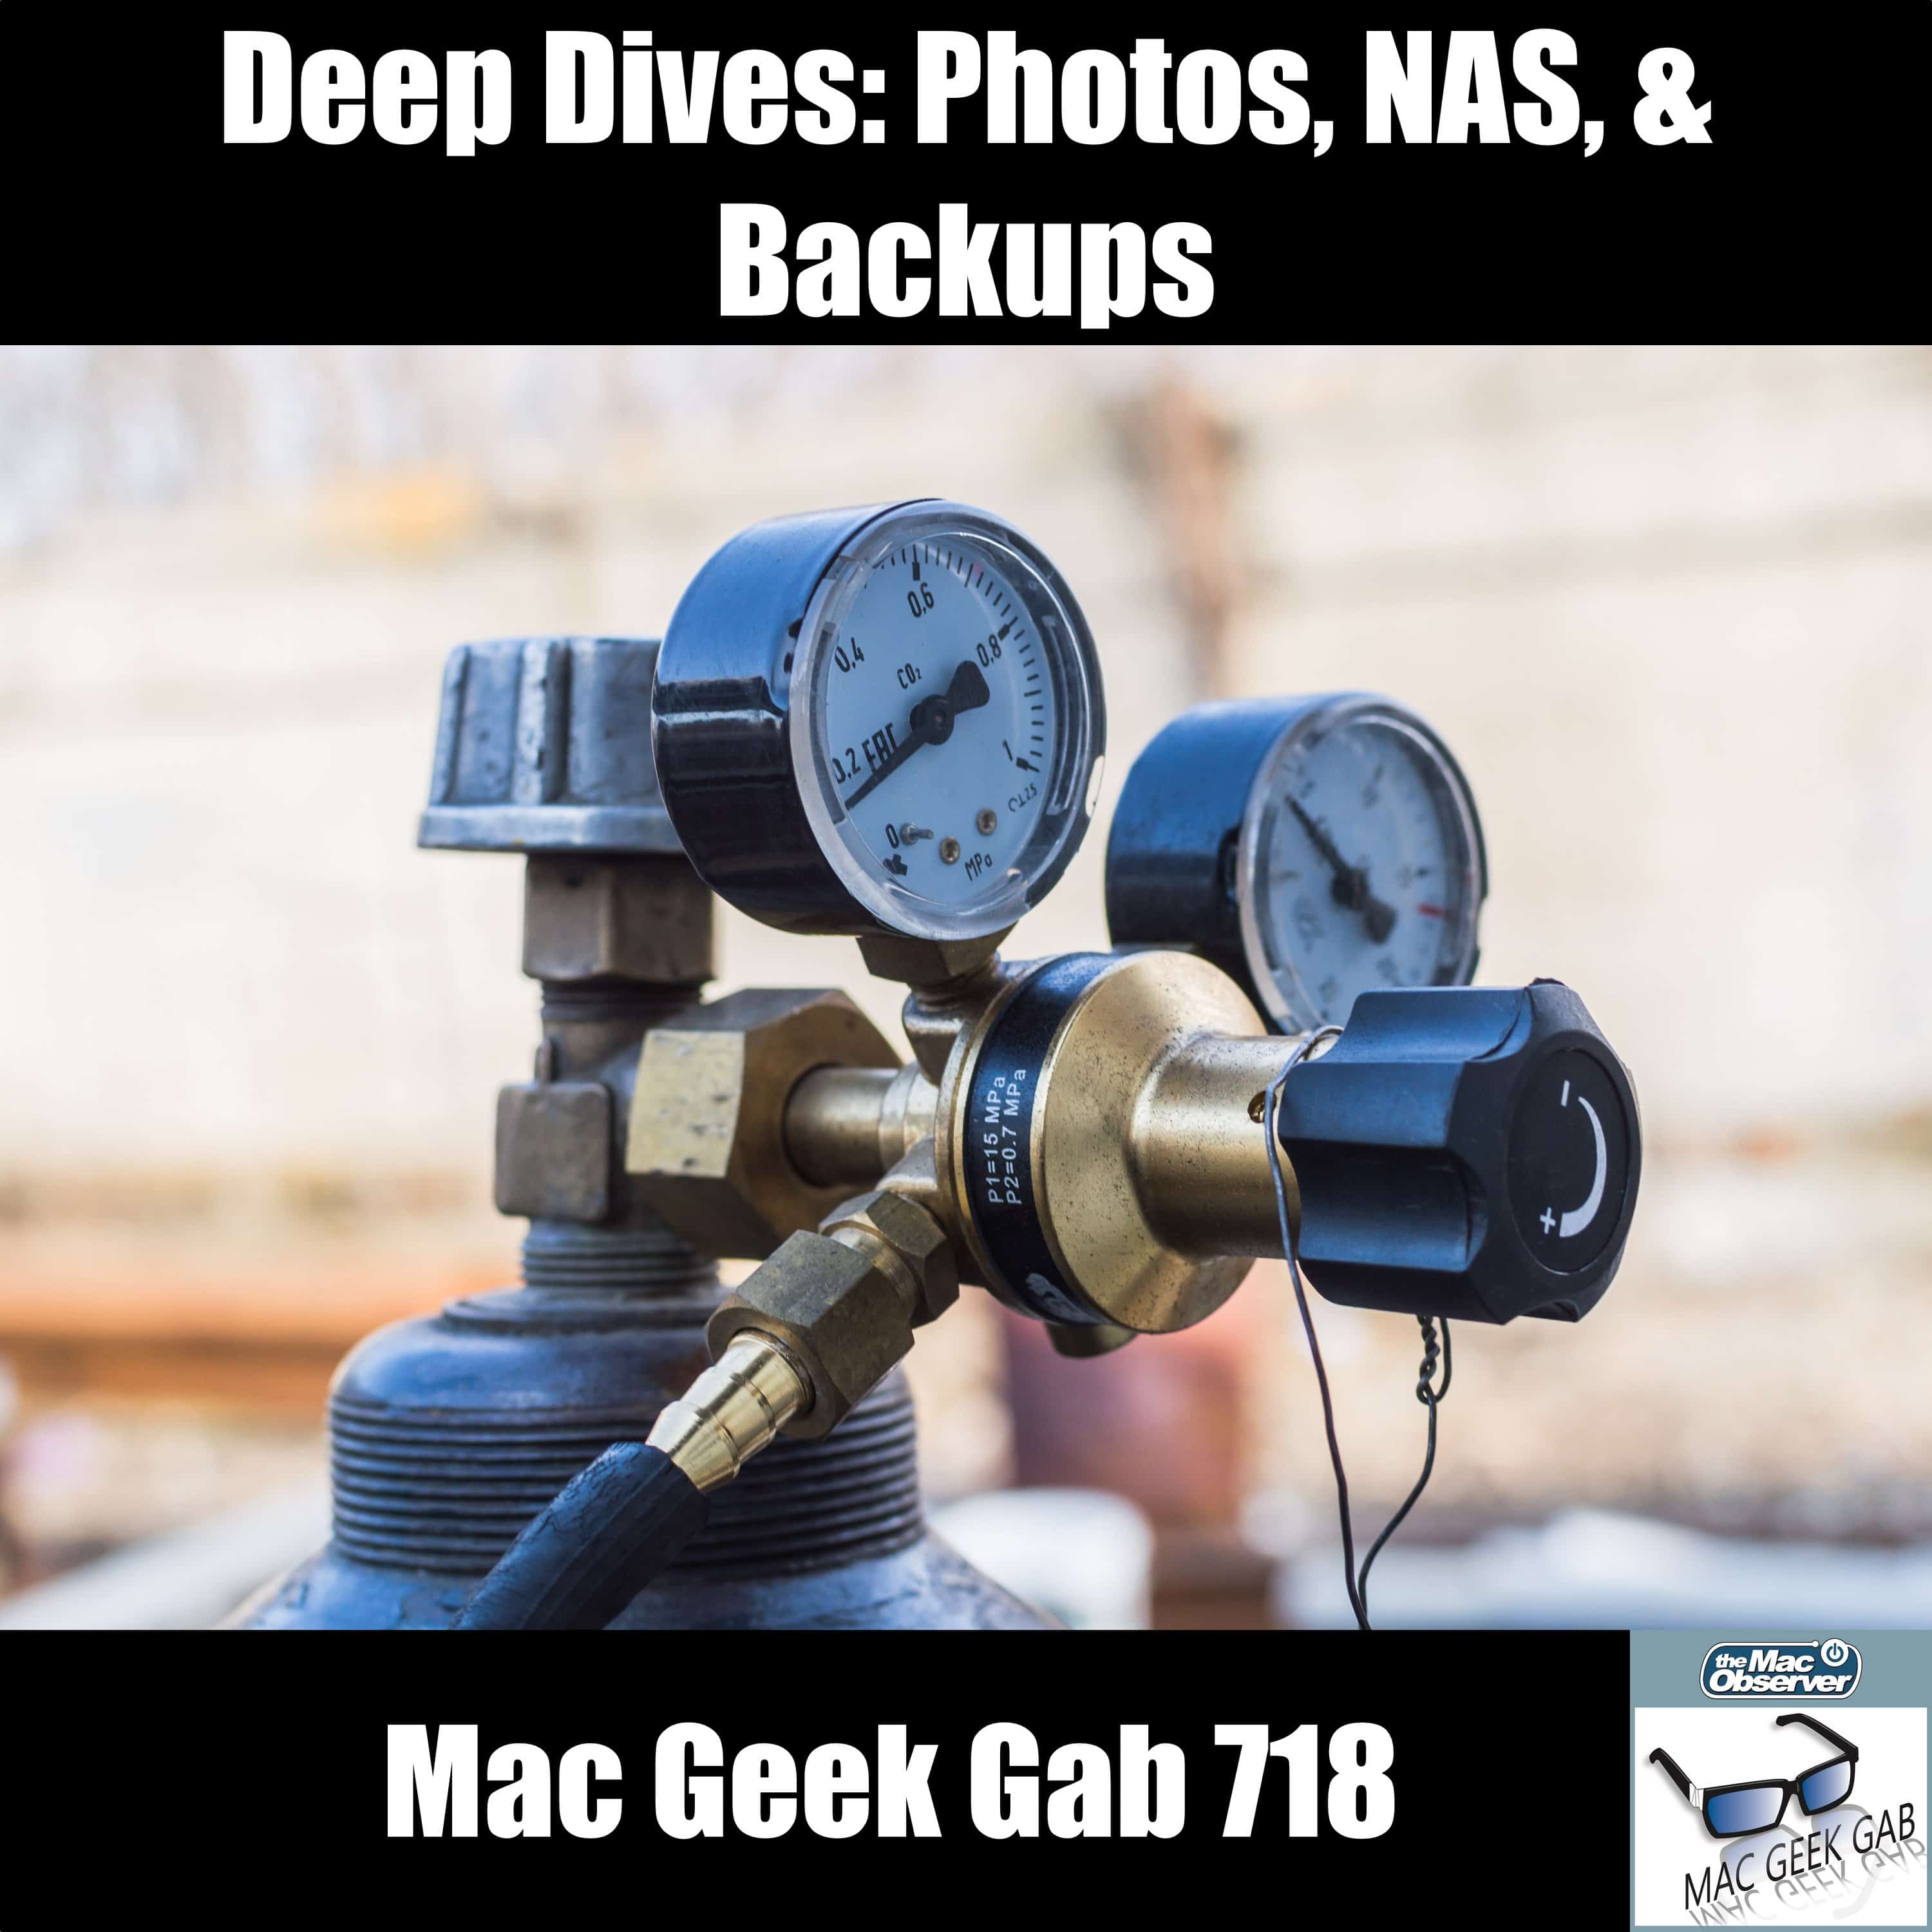 Deep Dives: Photos, NAS, & Backups – Mac Geek Gab Podcast 718